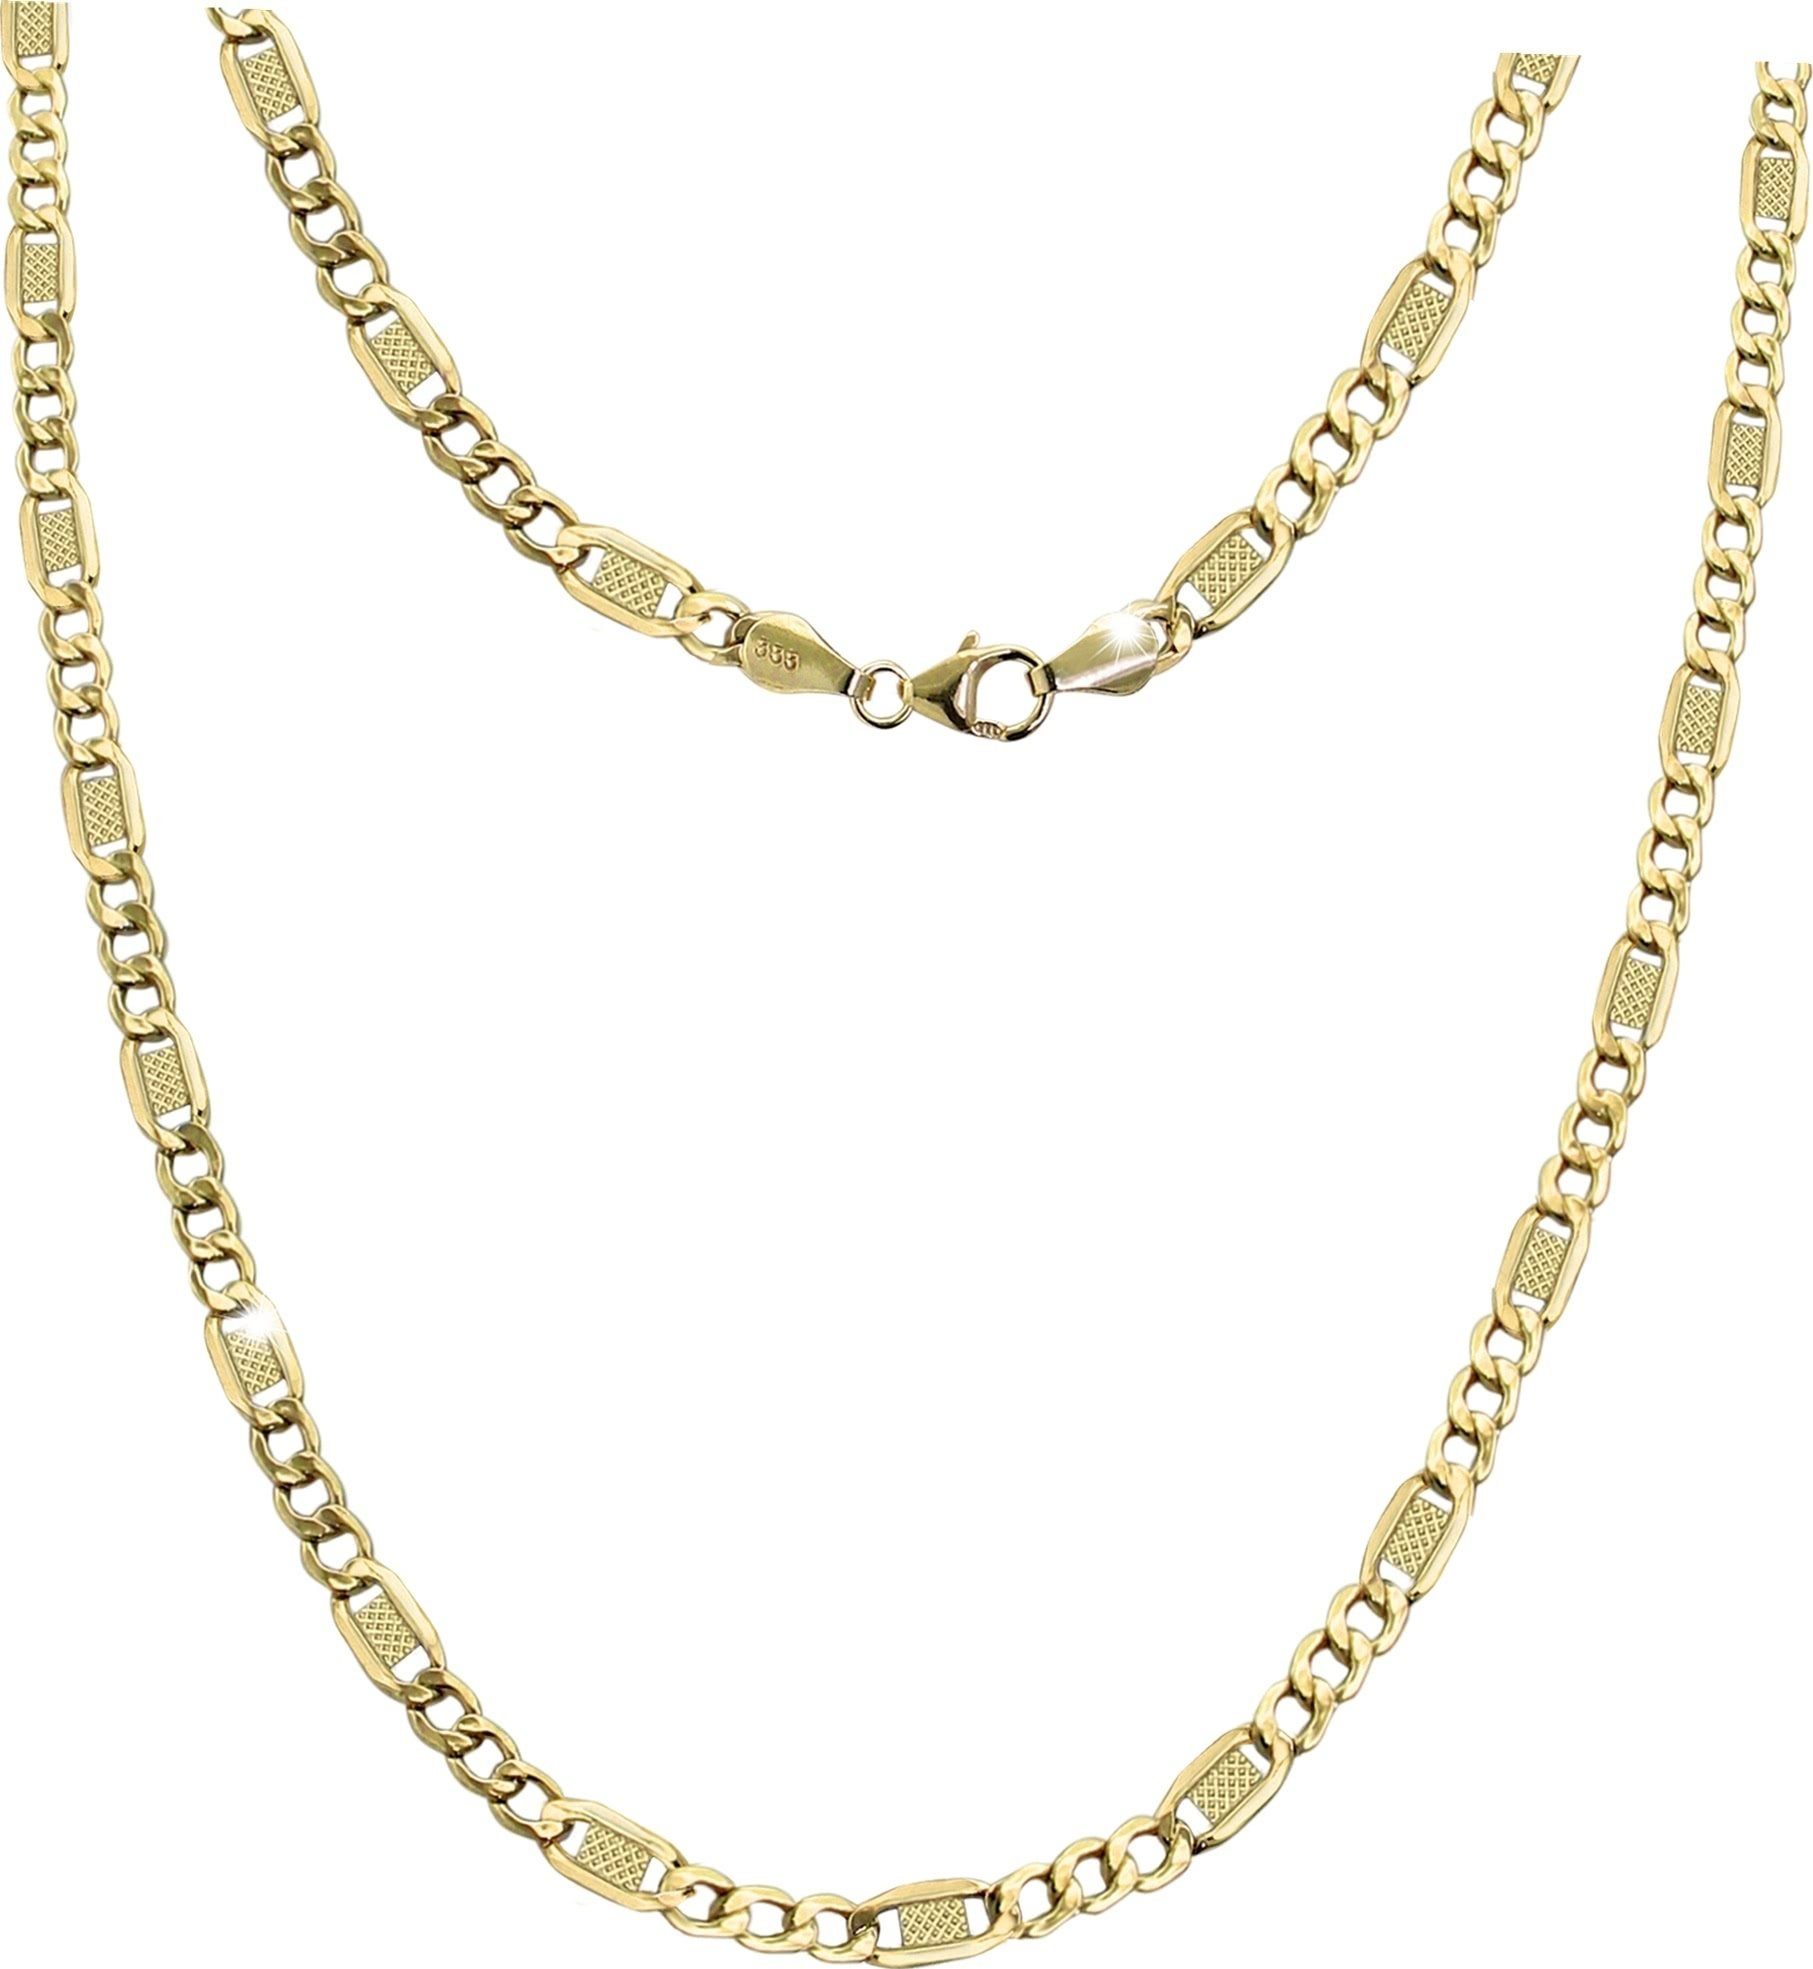 GoldDream Goldkette »D2GDKB01060Y GoldDream Collier Halskette 8K Gold«  (Collier), Damen Colliers Halskette 60cm, 333 Gelbgold - 8 Karat Echtgold,  333er Gelbgold online kaufen | OTTO